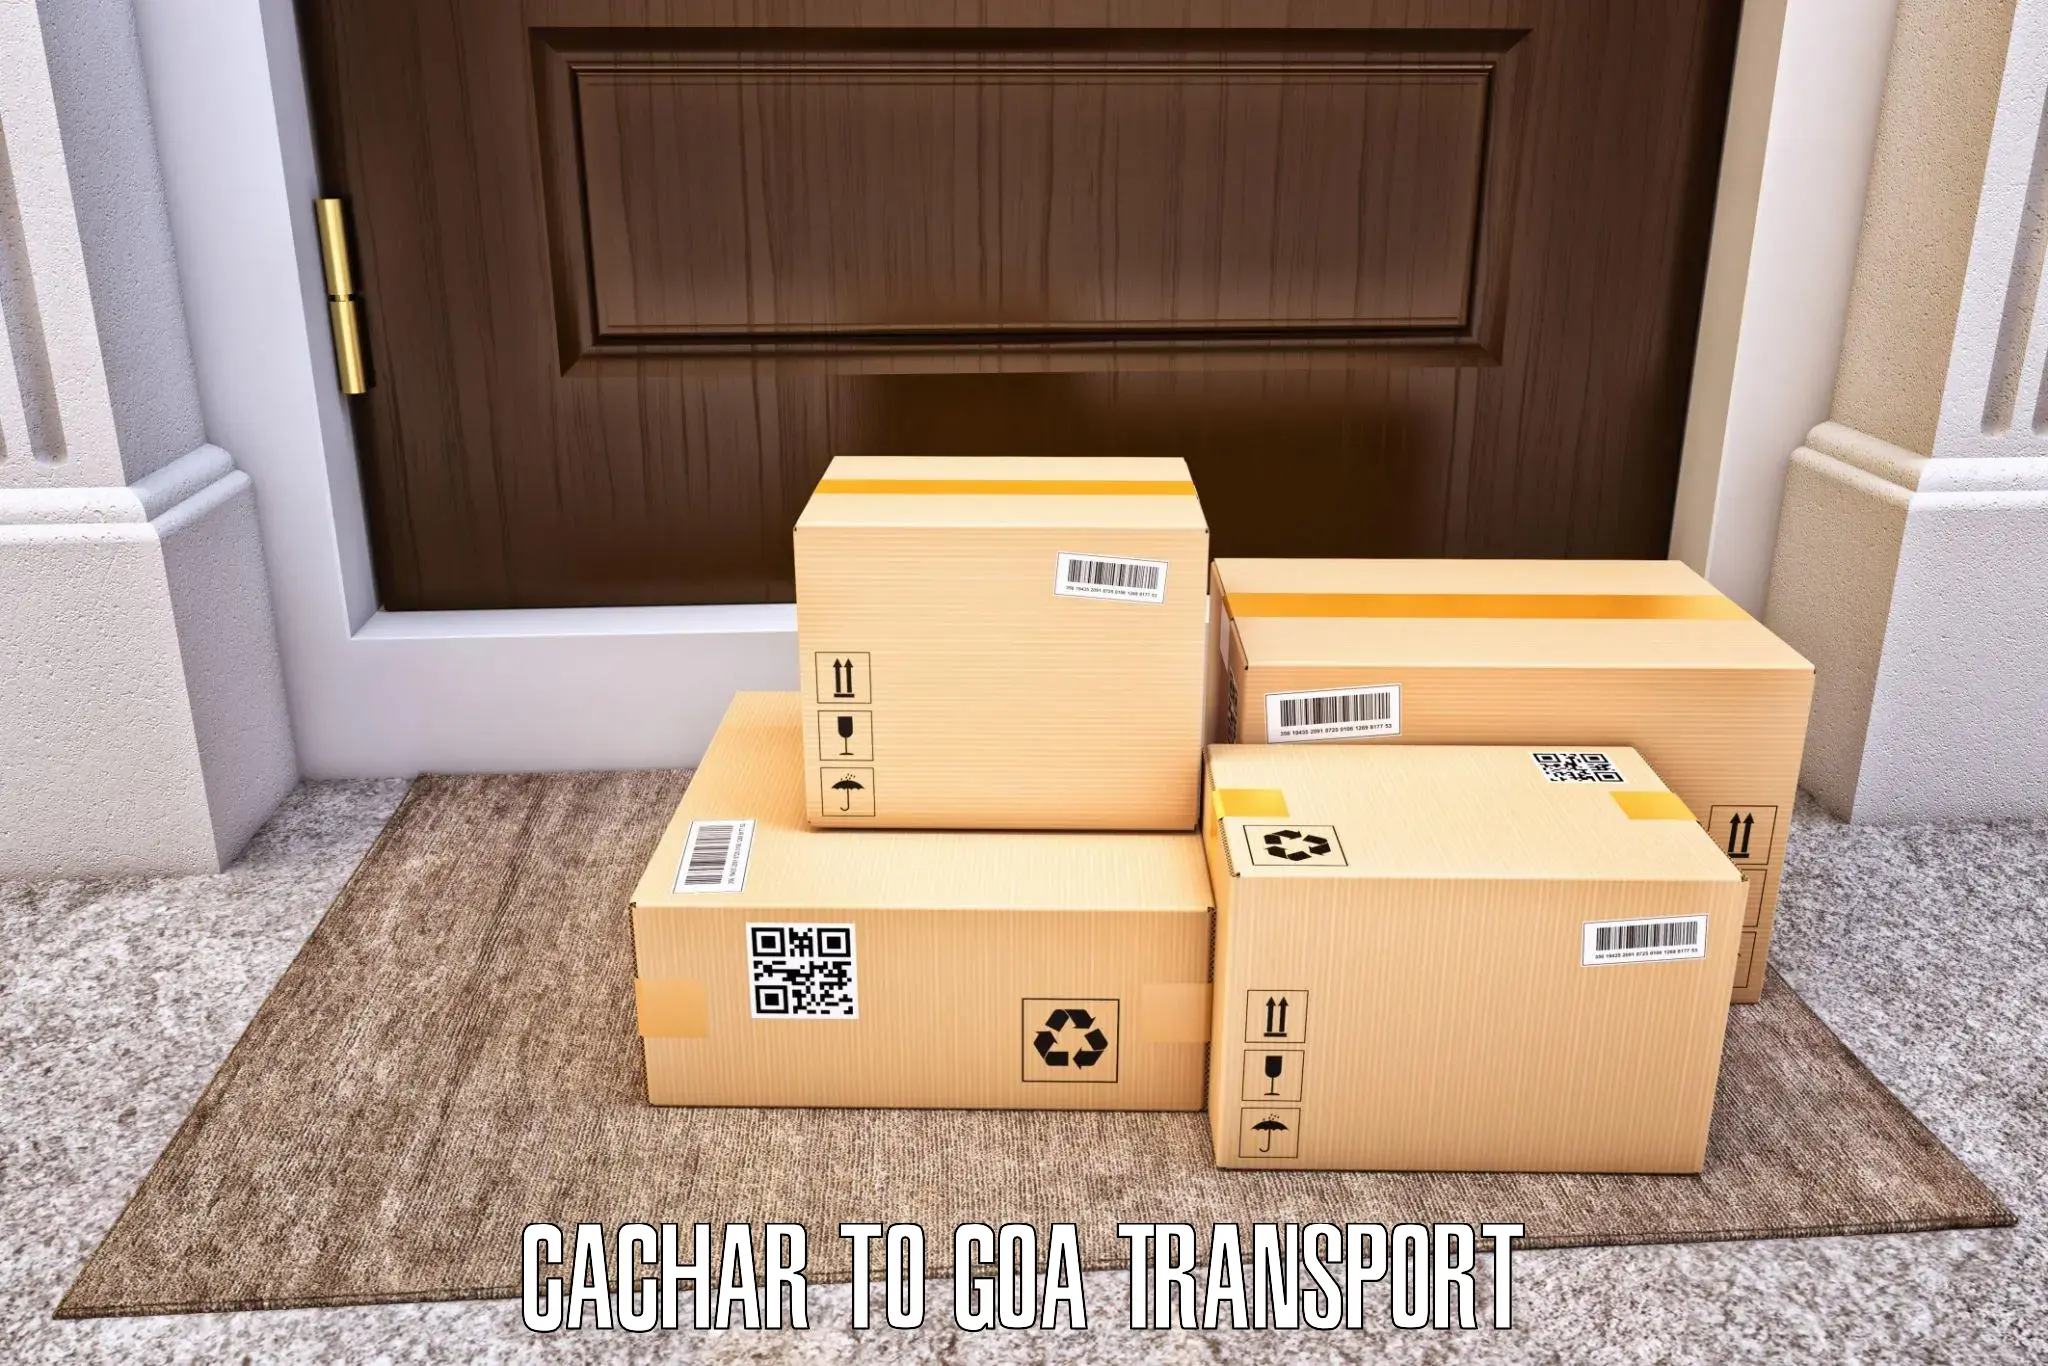 Transport services Cachar to Mormugao Port